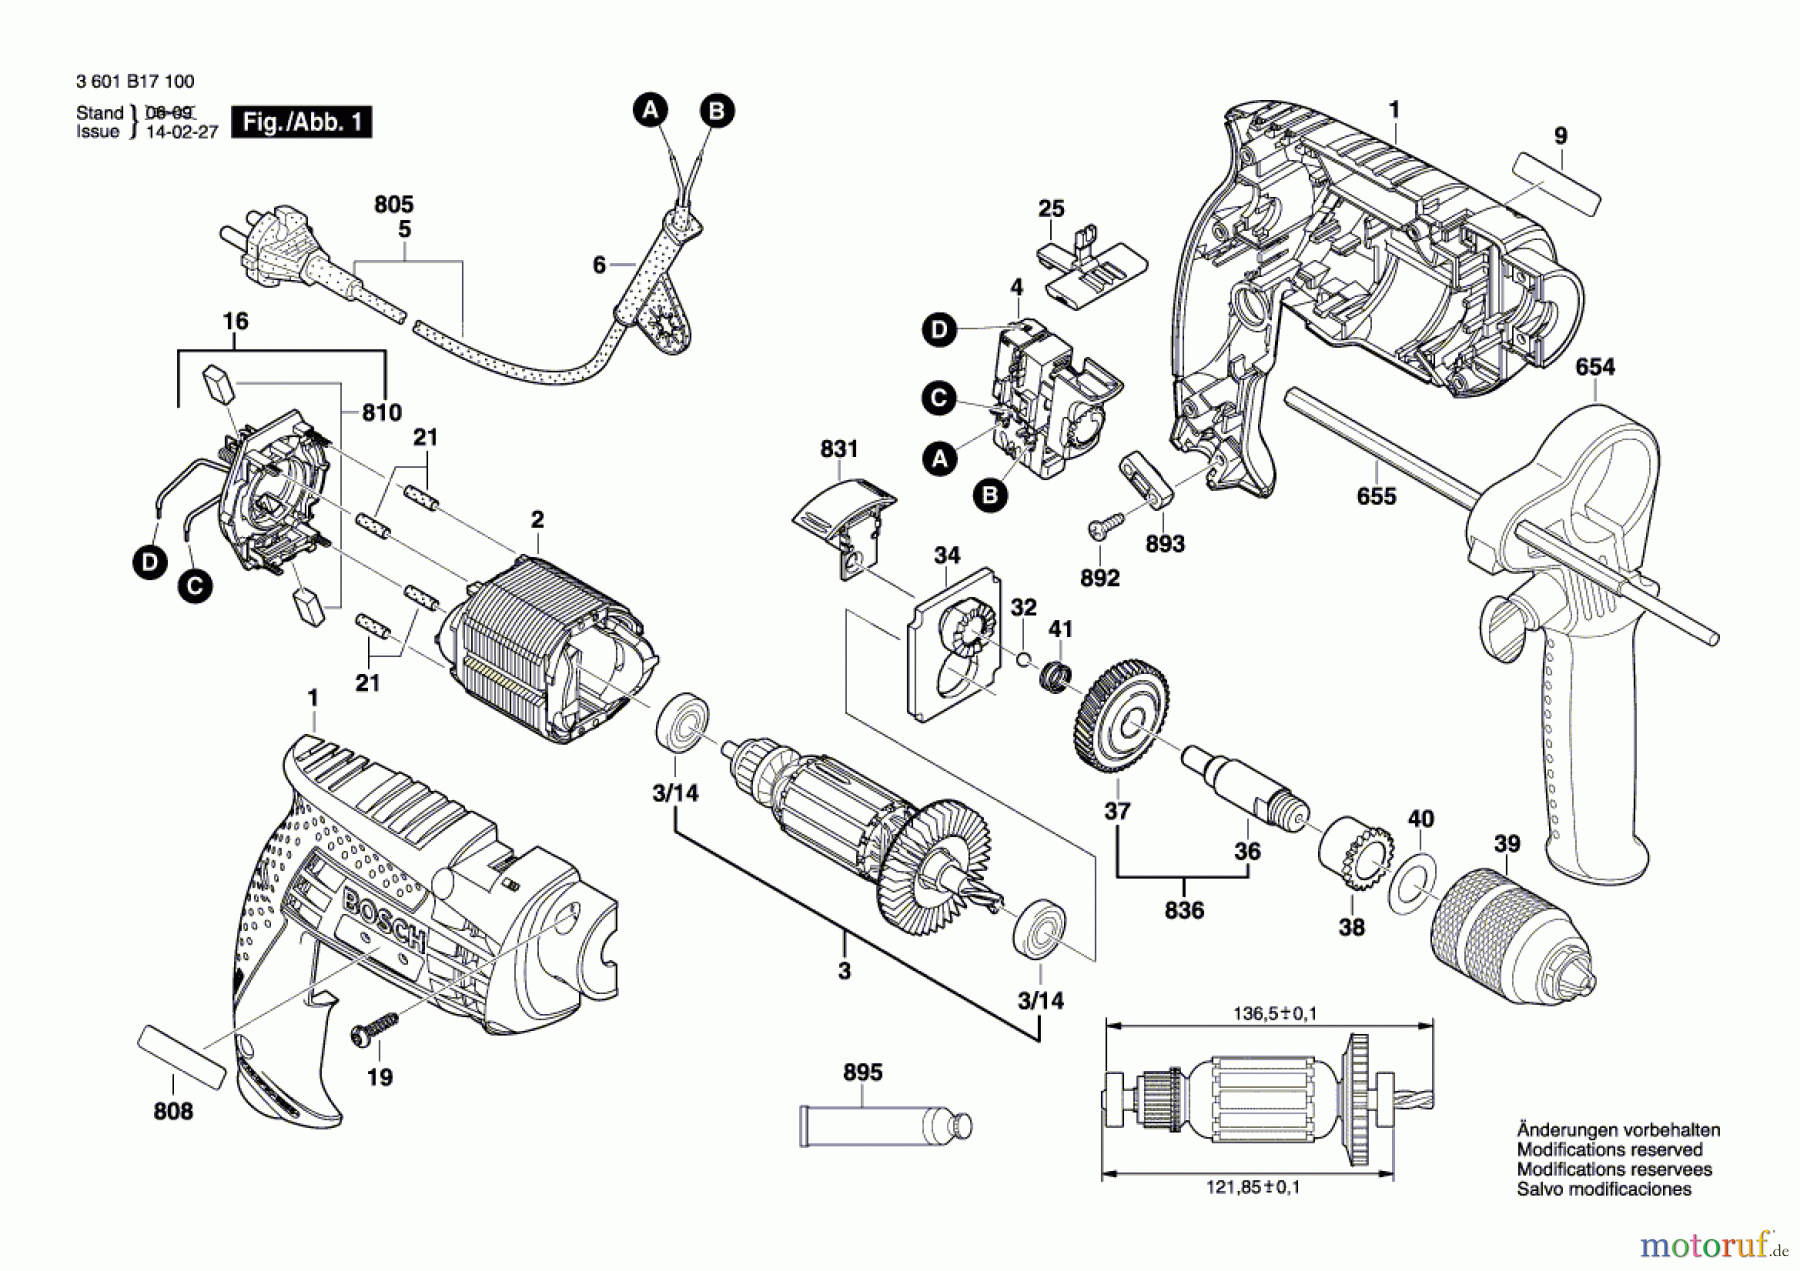  Bosch Werkzeug Schlagbohrmaschine GSB 13 RE Seite 1